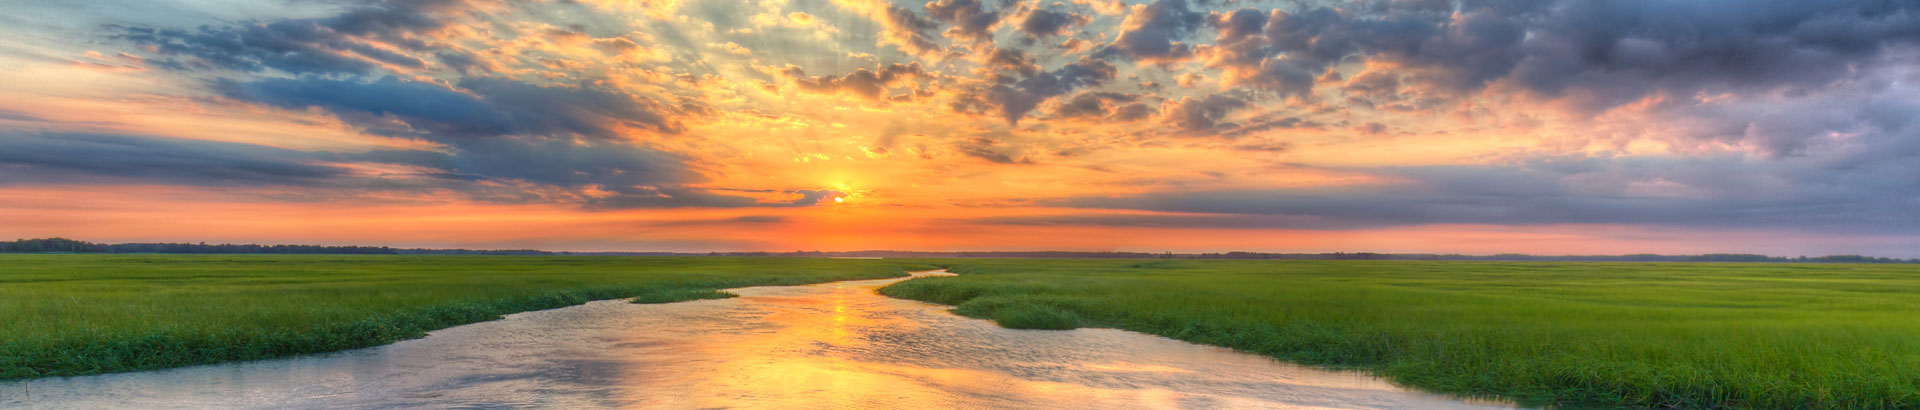 Delaware sunset over a marsh